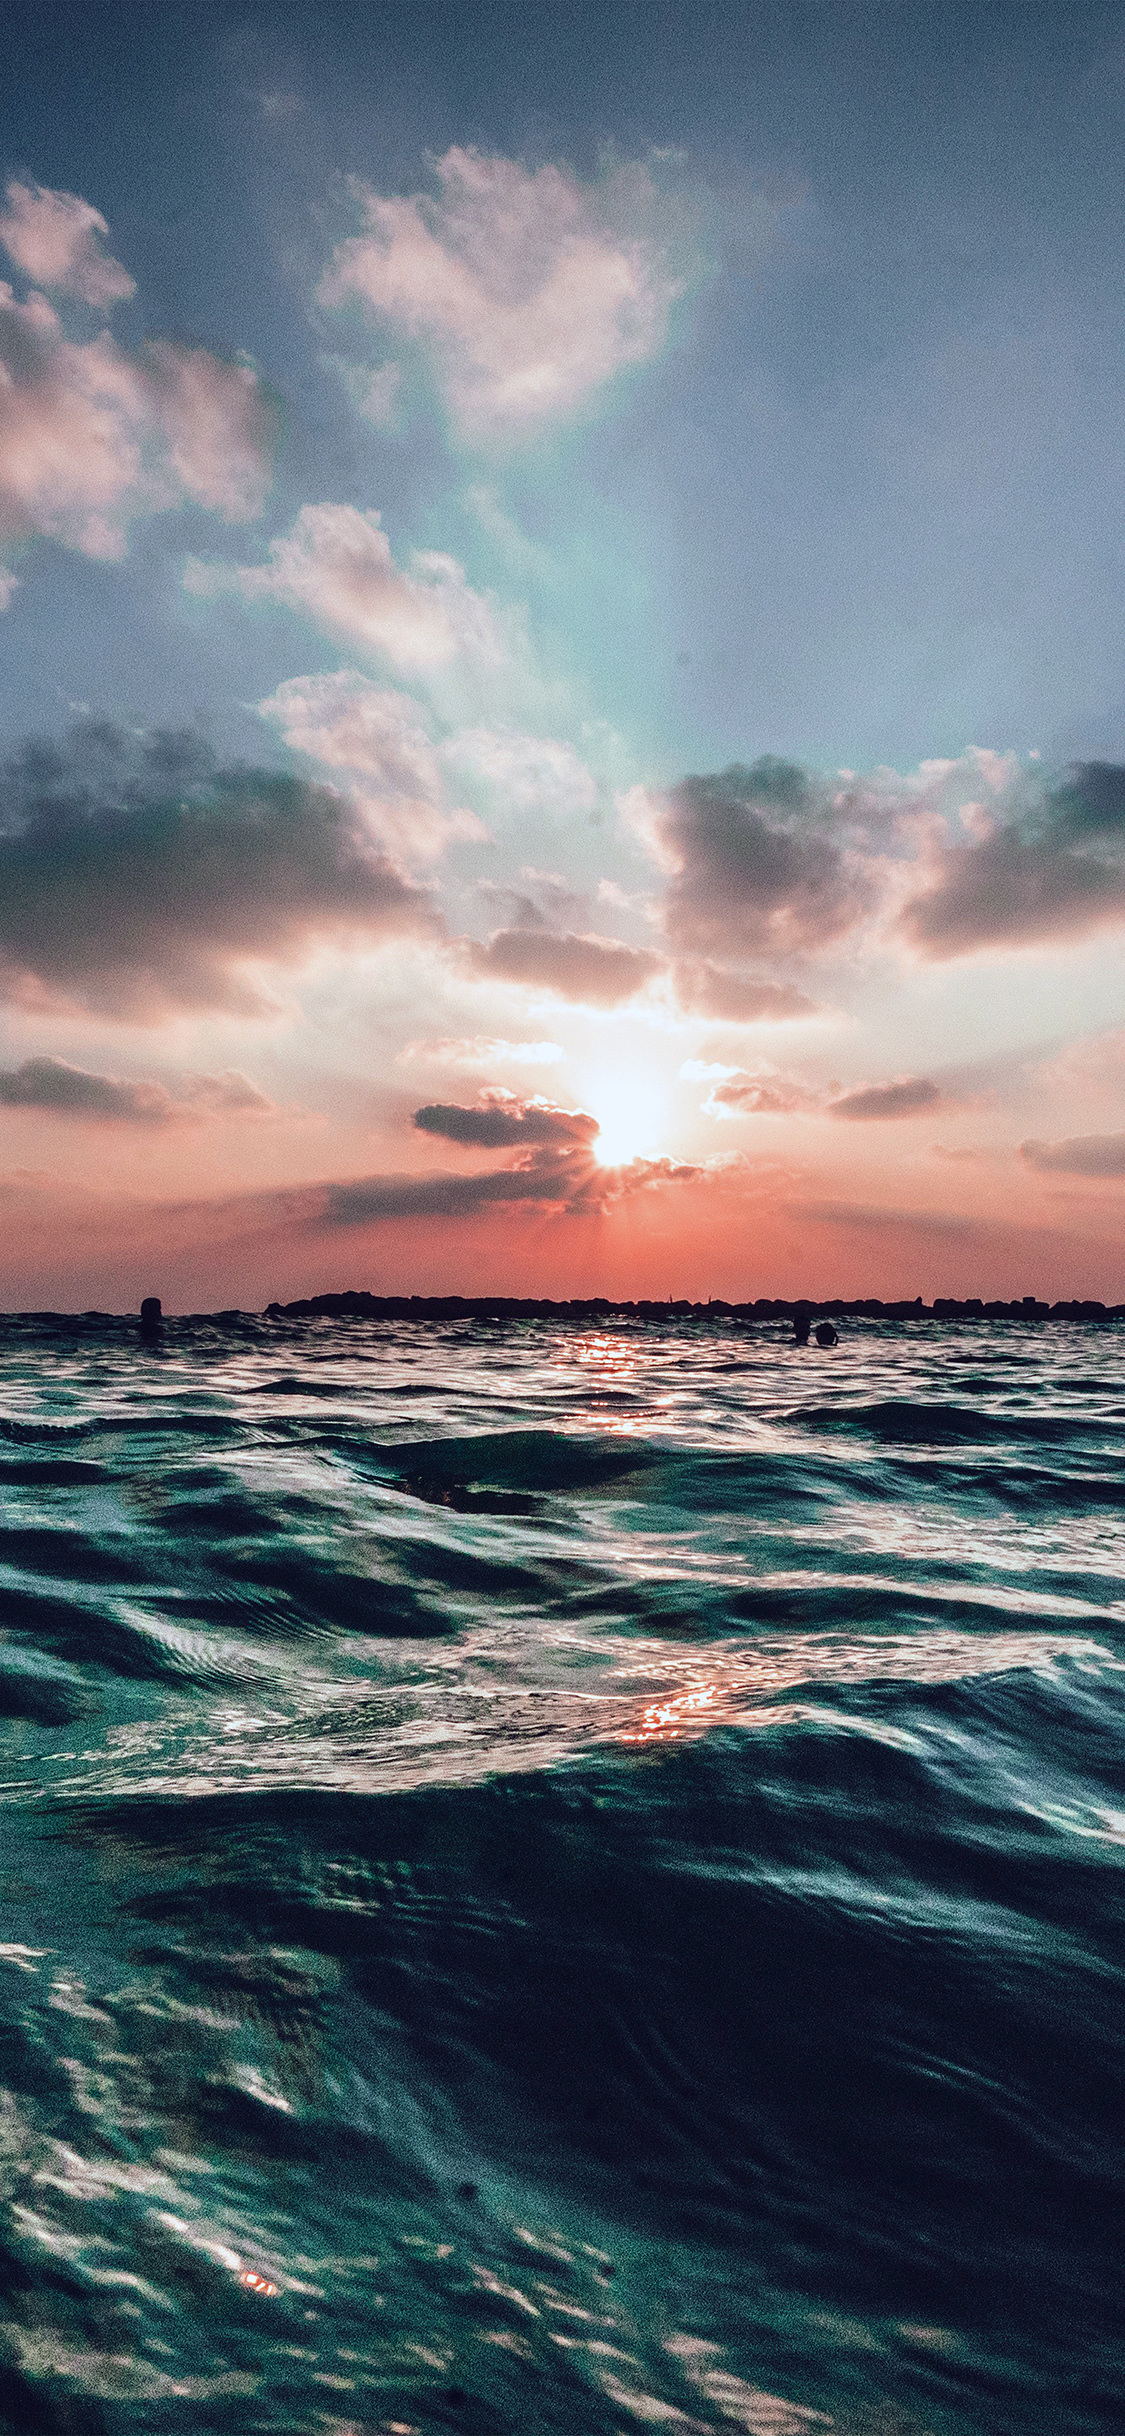 iPhone X wallpaper. sunset sea sky ocean summer blue water nature